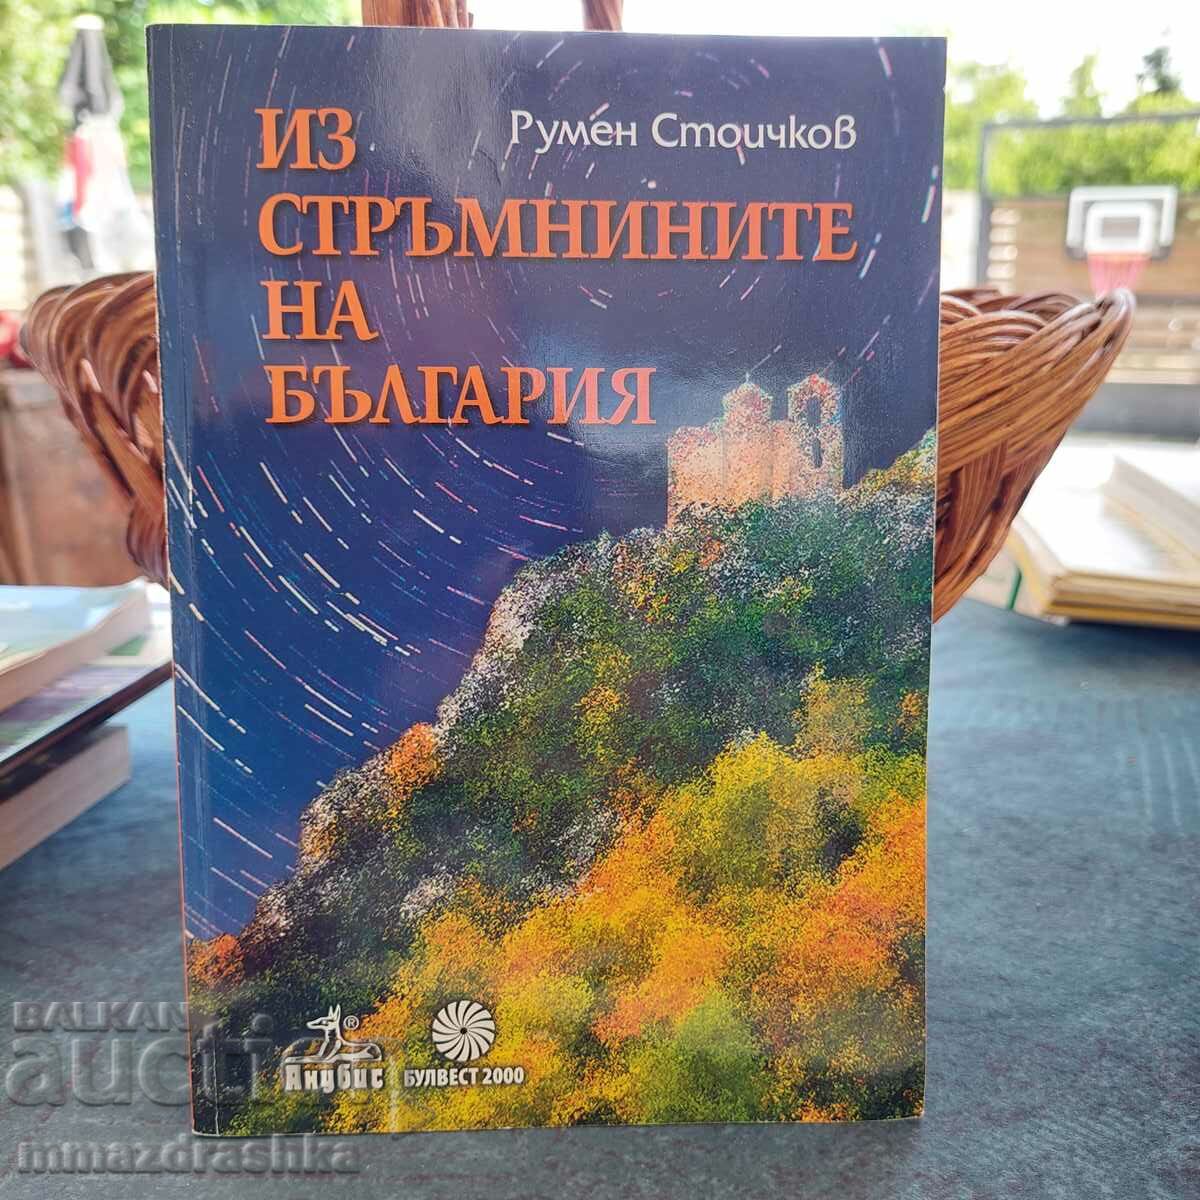 Through the cliffs of Bulgaria, Rumen Stoichkov